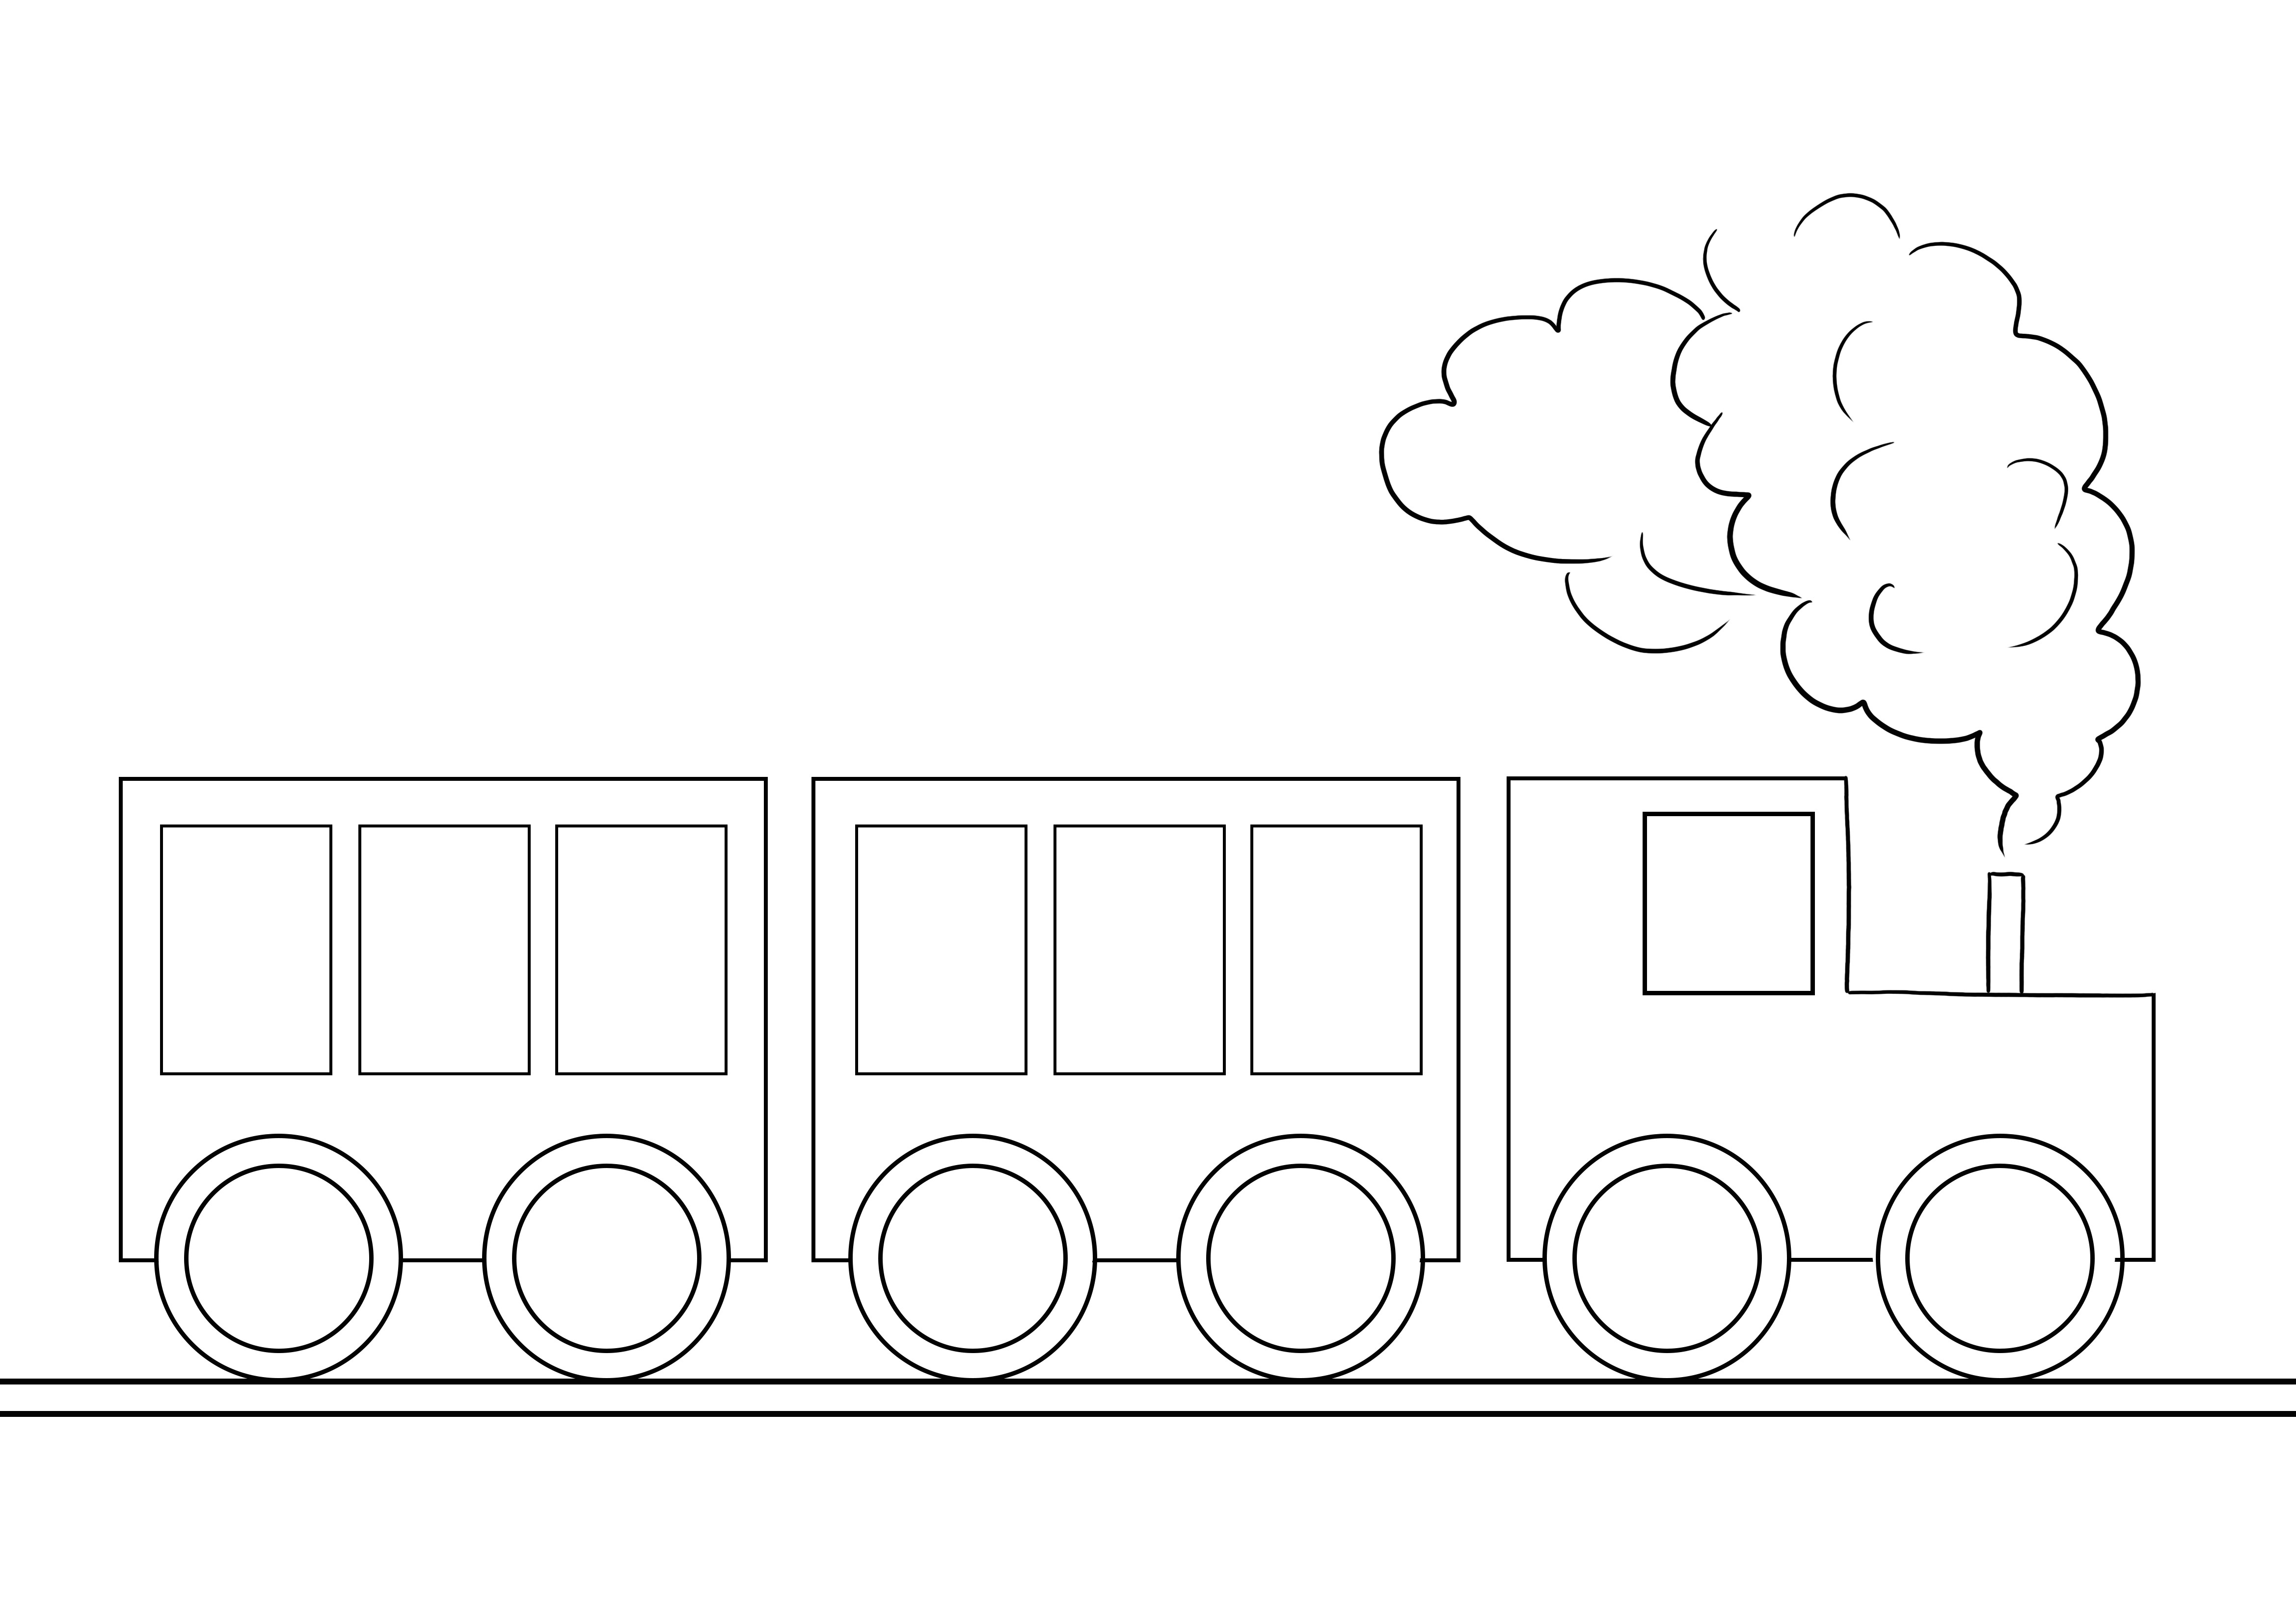 Gambar mewarnai kereta api yang sangat sederhana untuk dicetak atau diunduh secara gratis